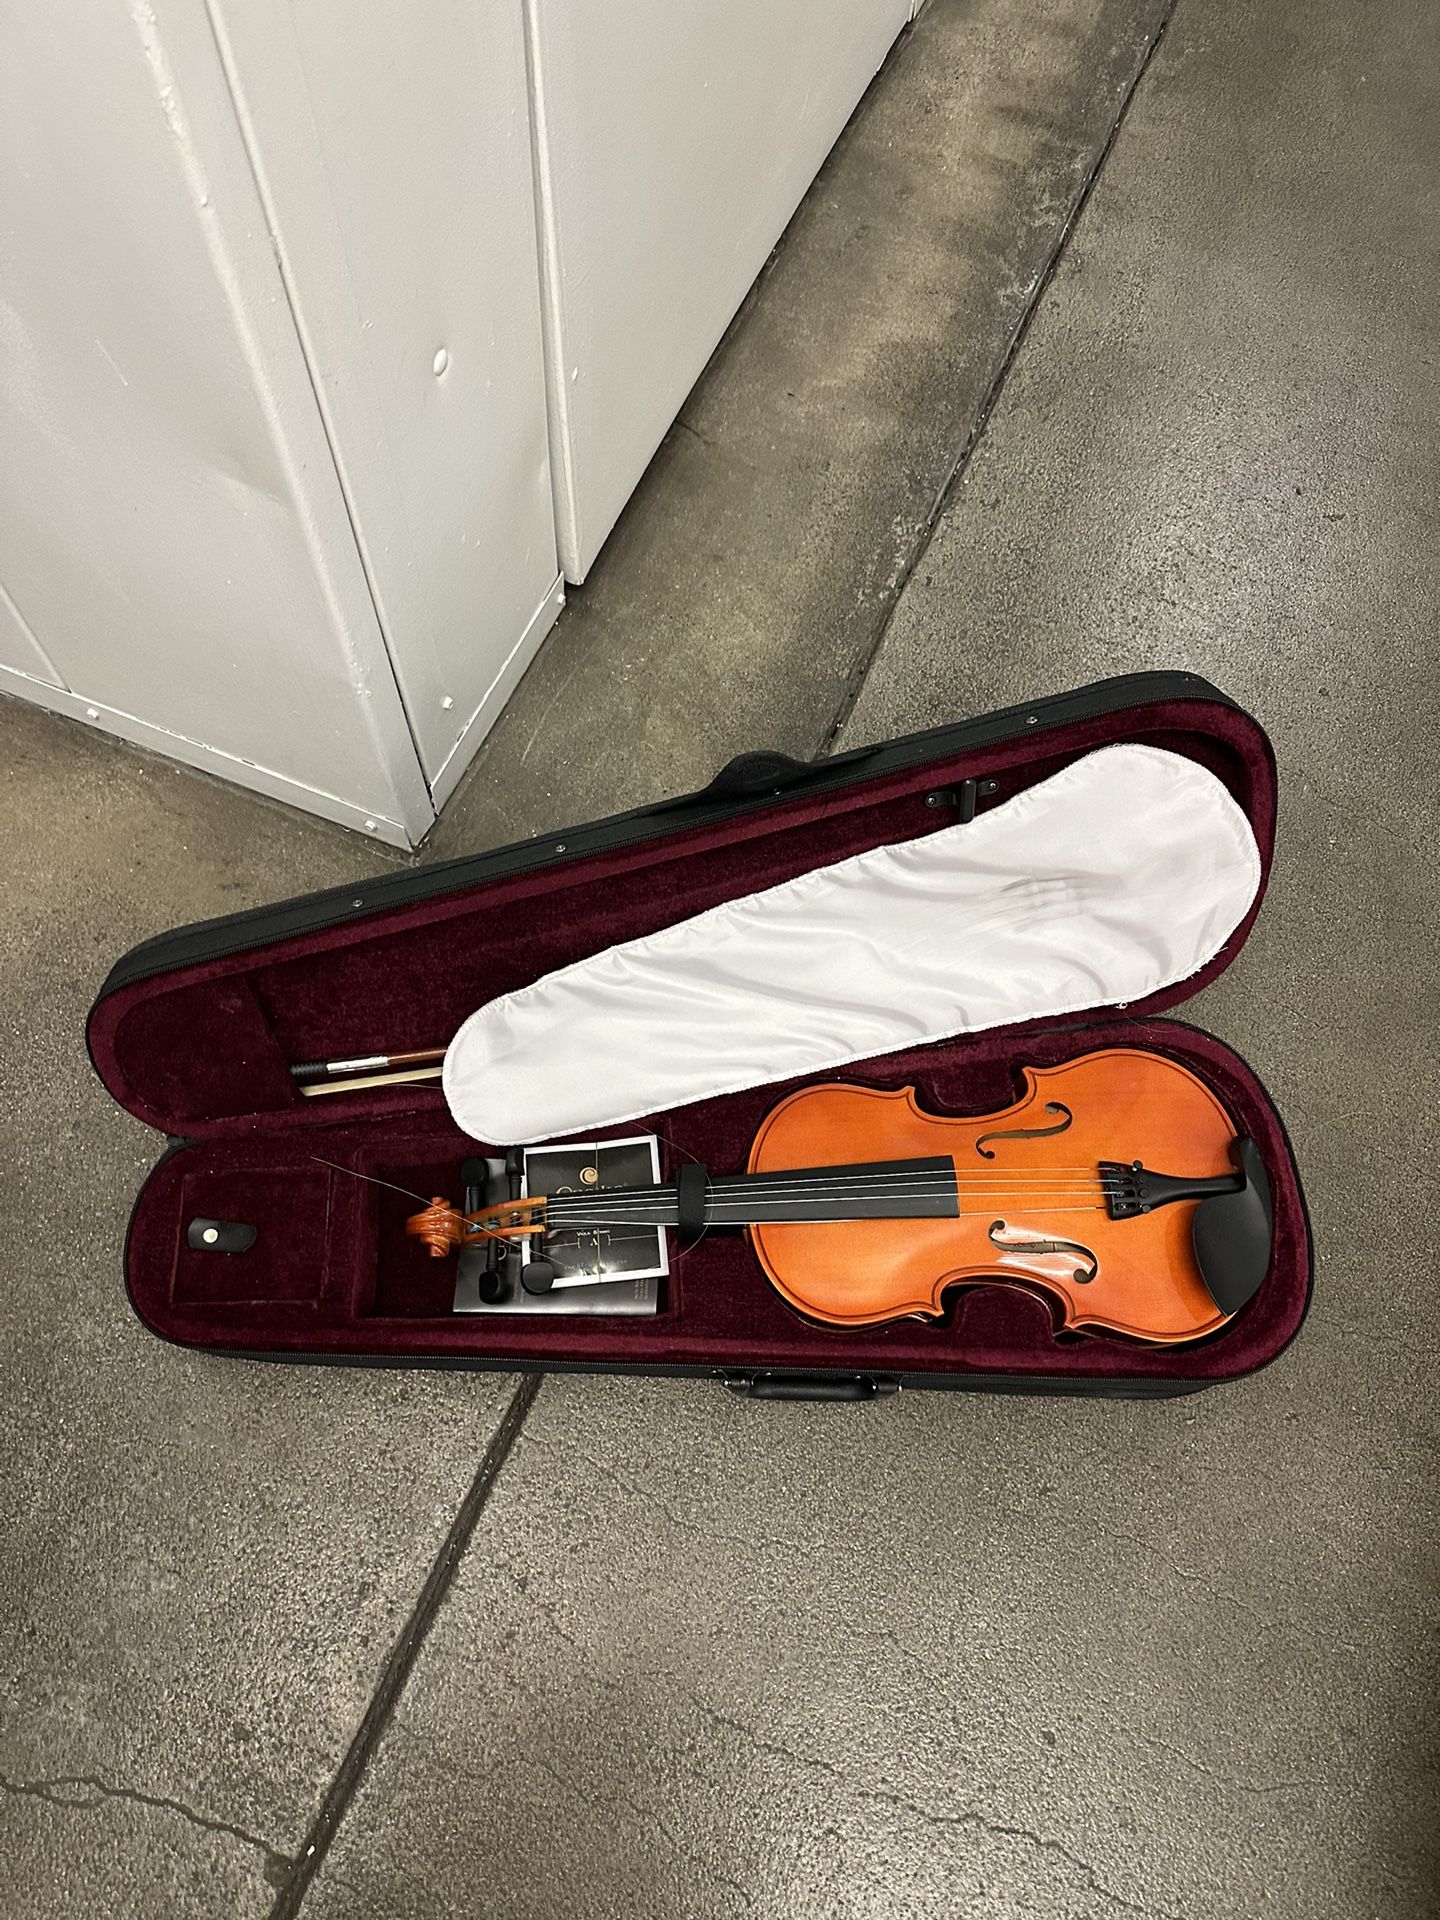 Violin With Case